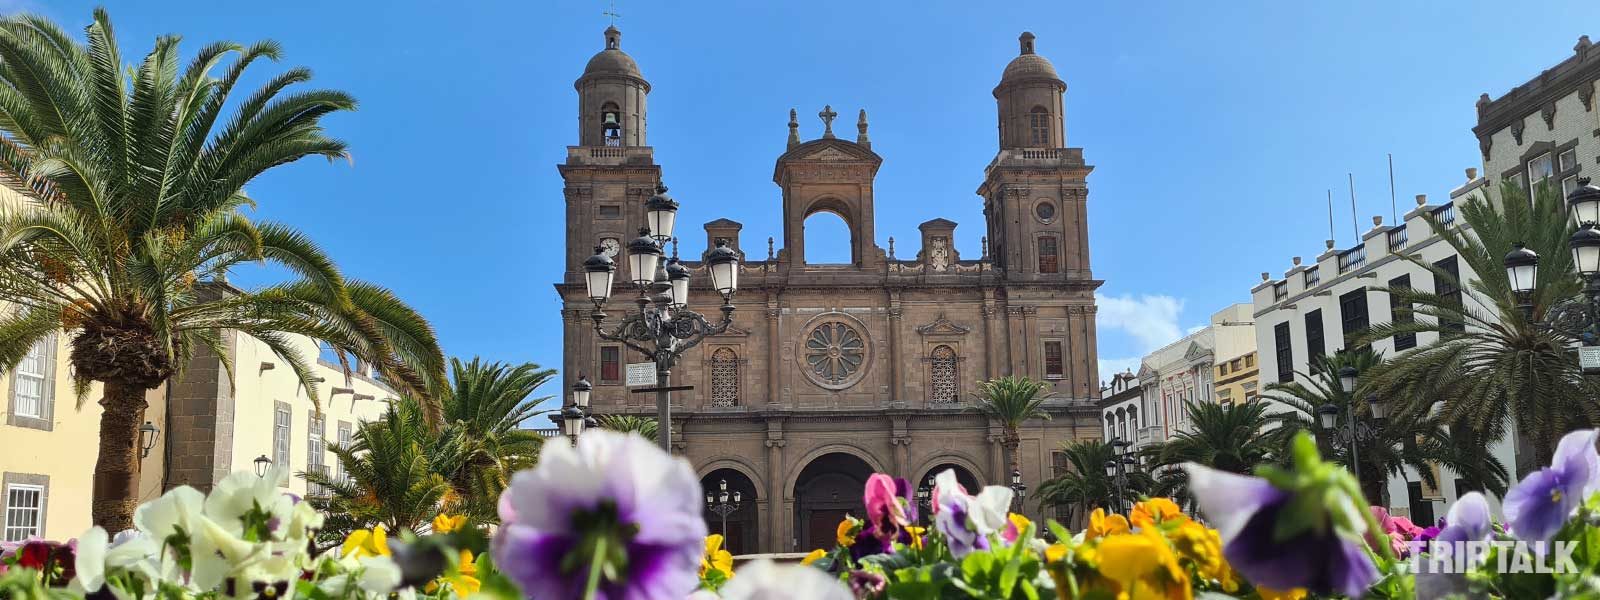 Kathedraal van Las Palmas de Gran Canaria